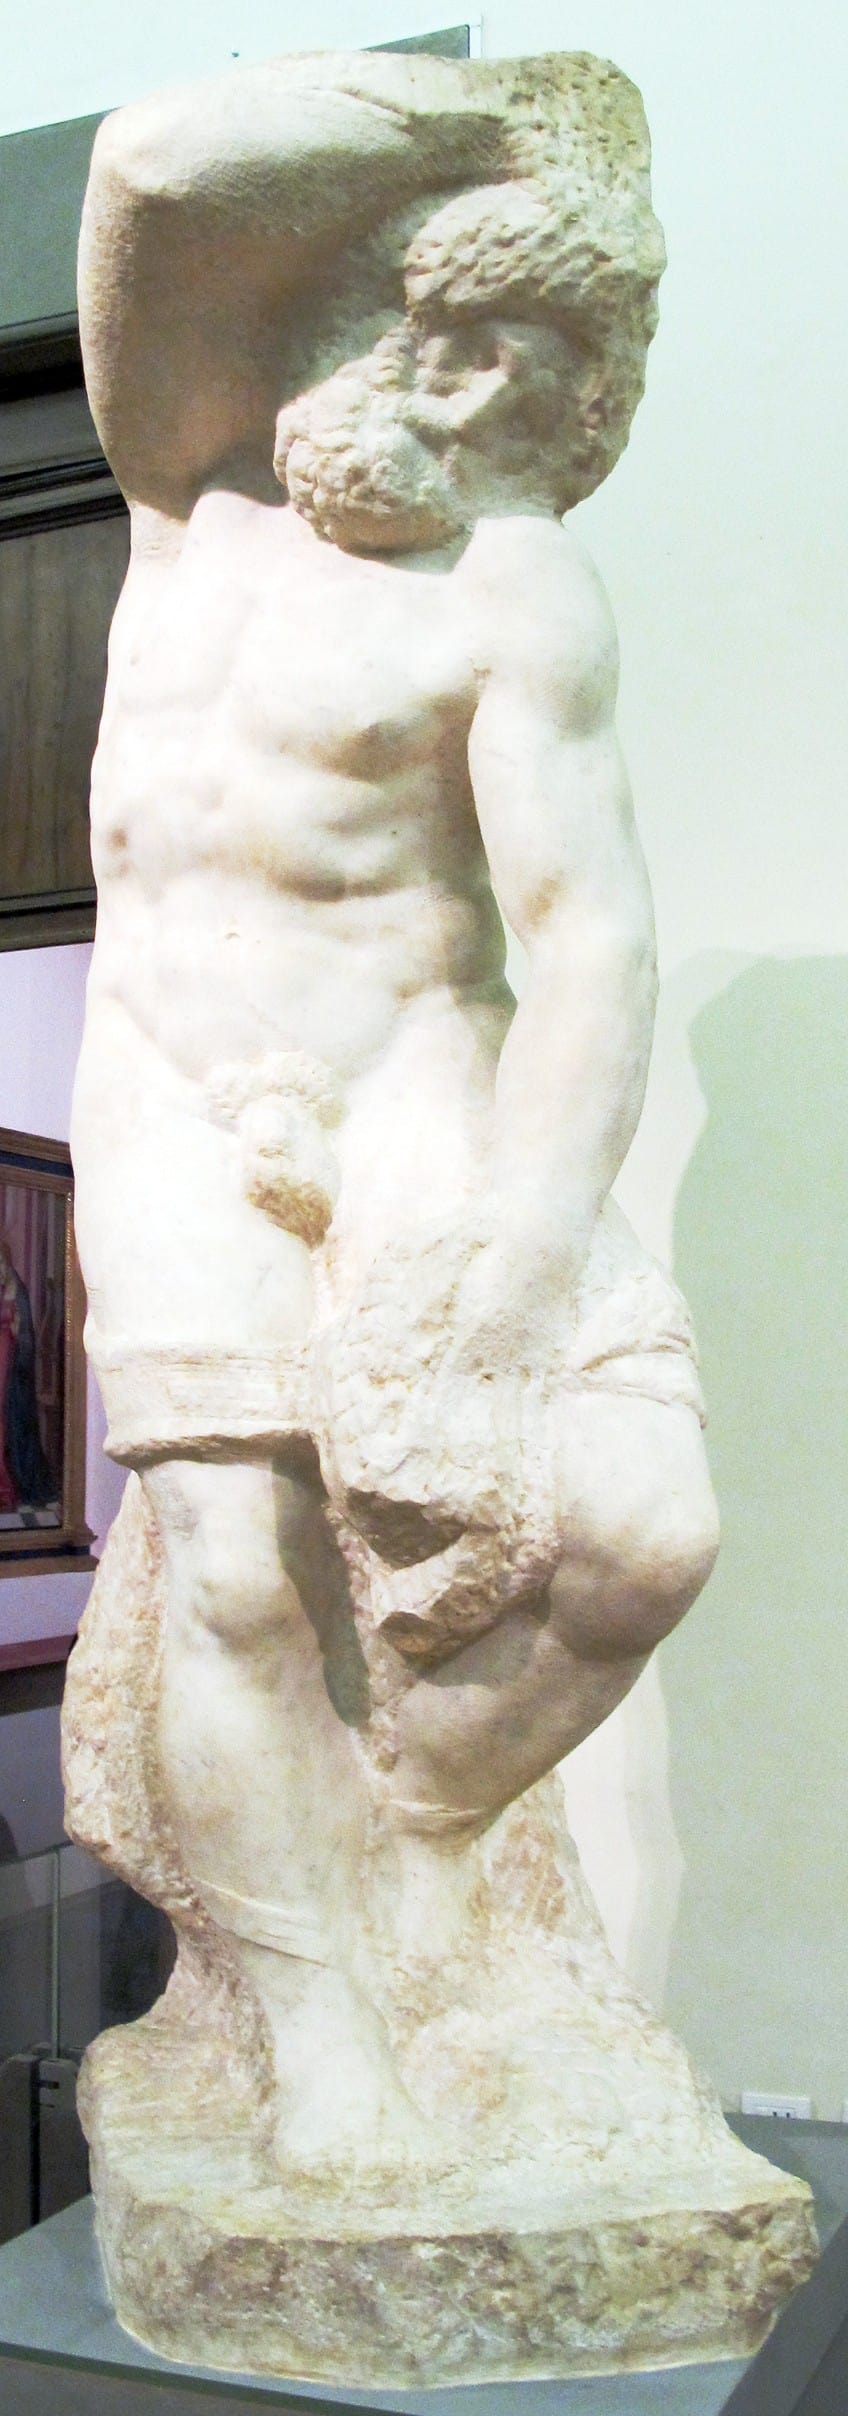 Famous Michelangelo Sculptures